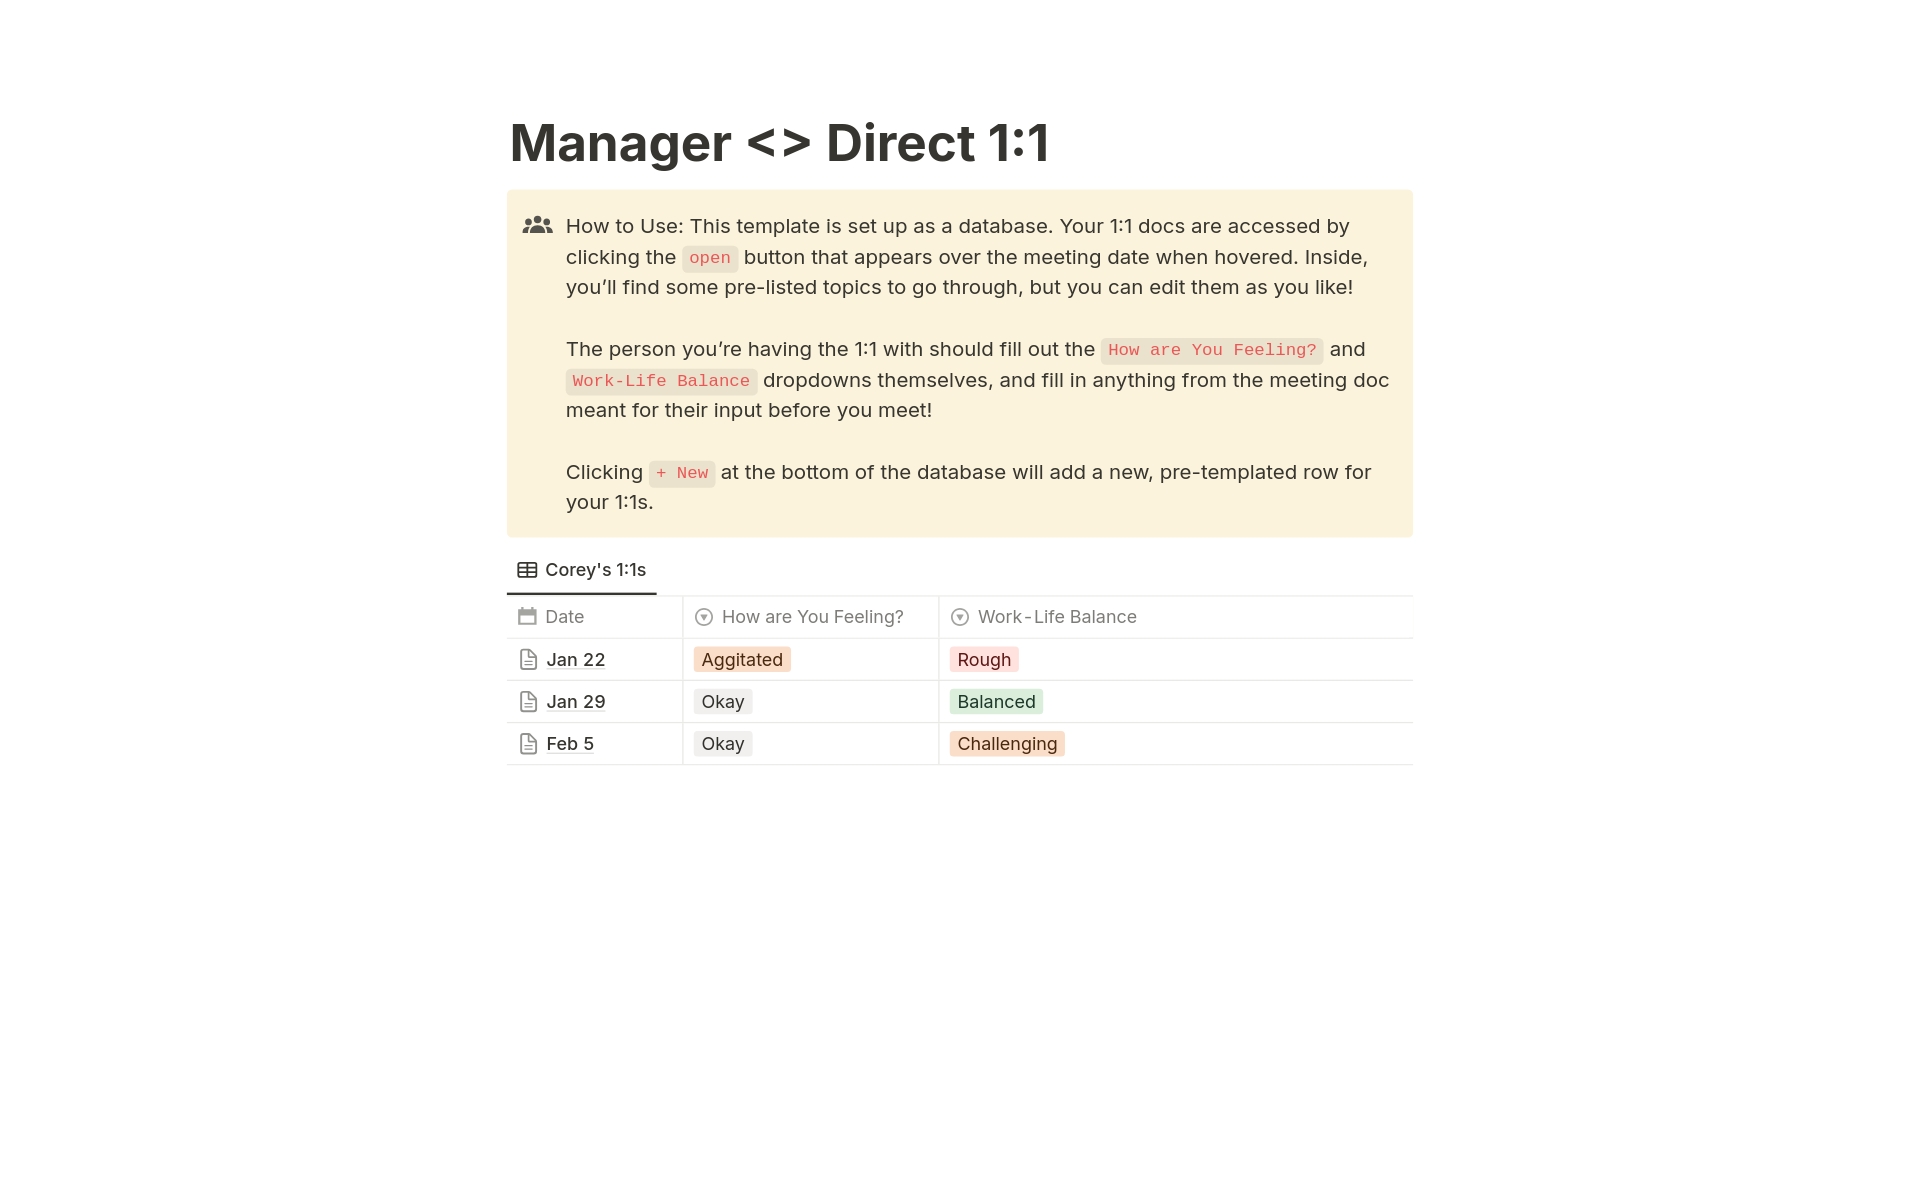 Aperçu du modèle de Manager <> Direct 1:1